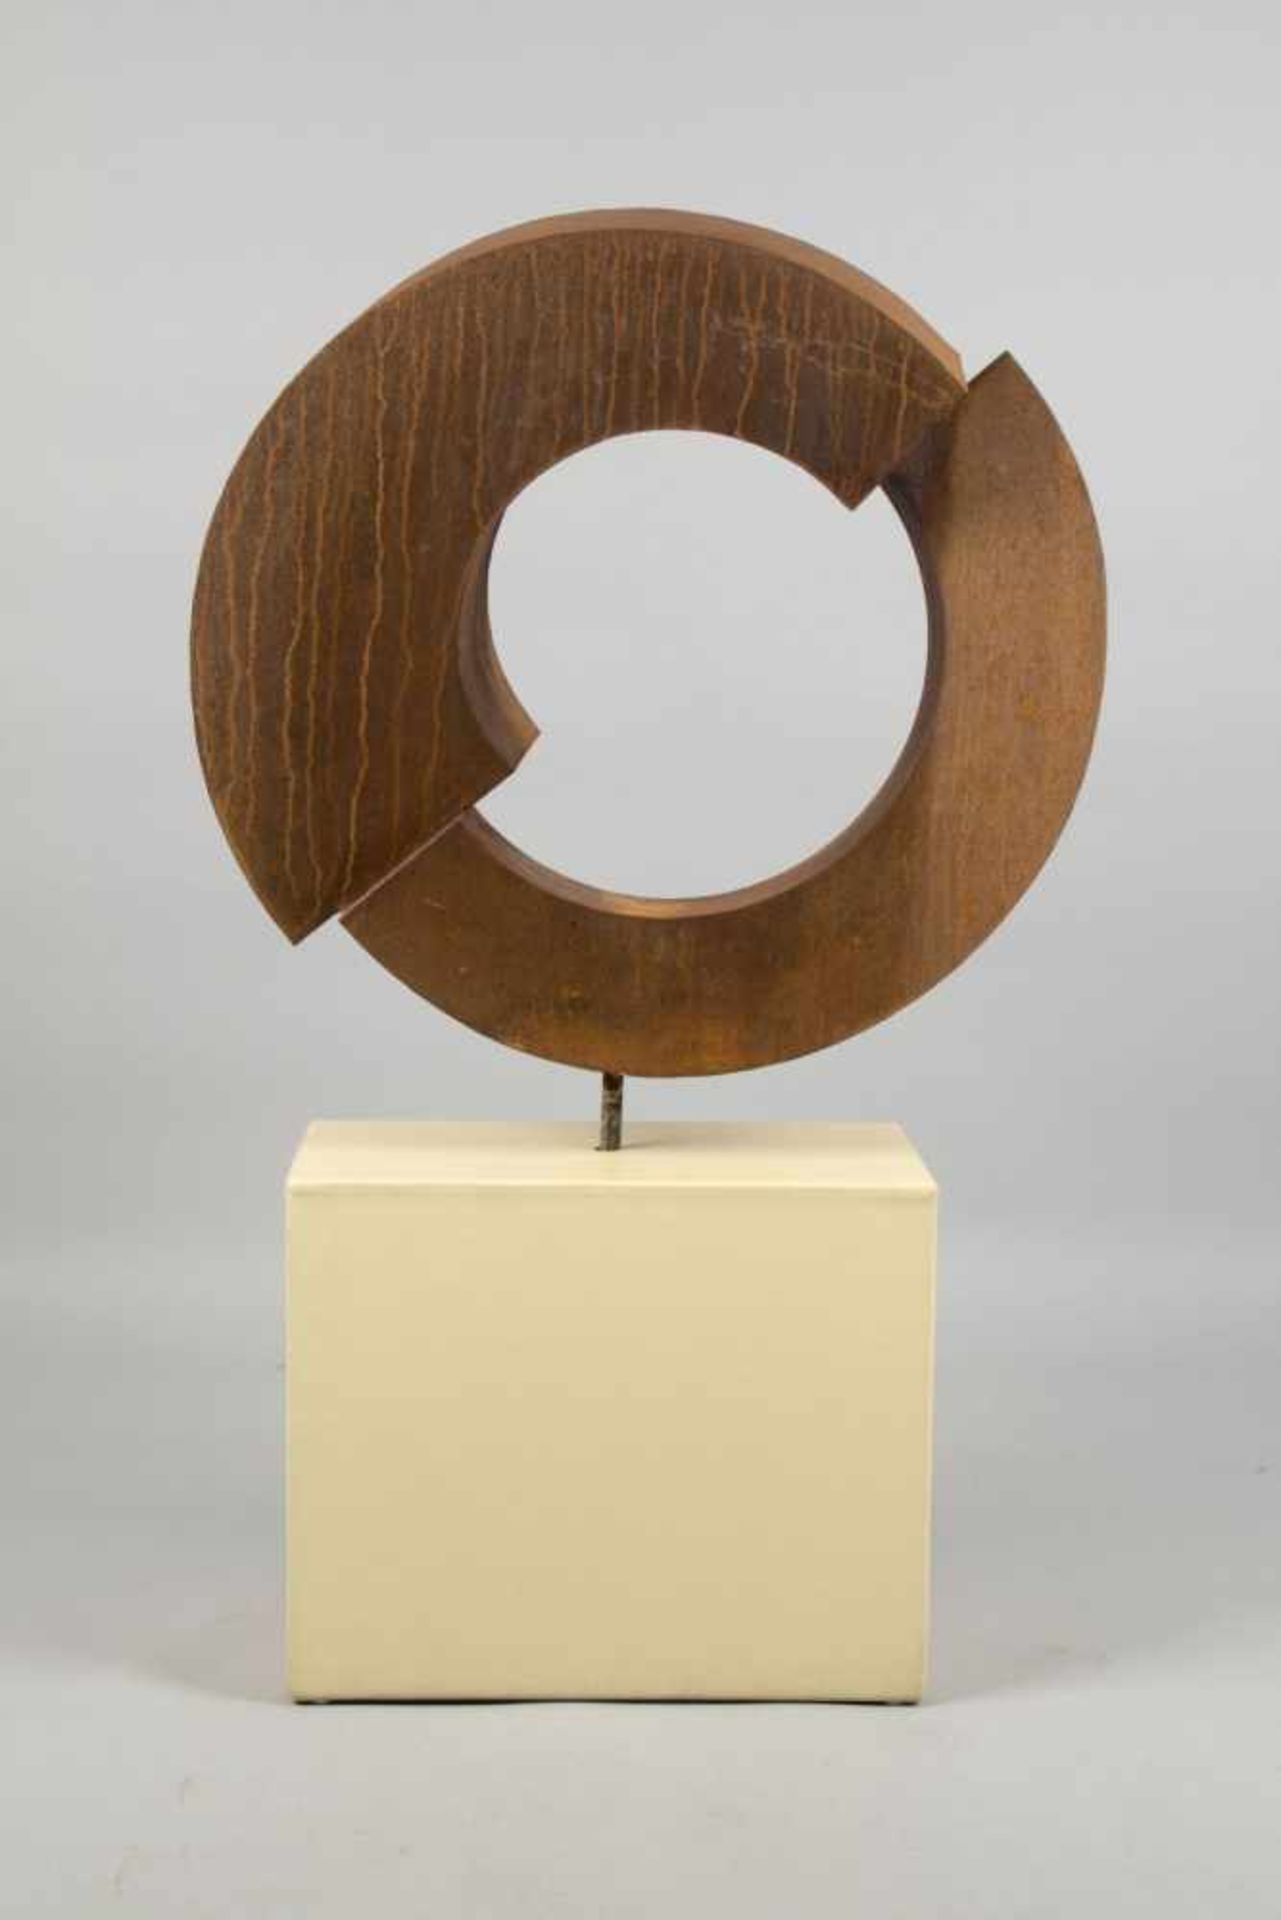 Unbekannt, 20. Jh.Aufgeschnittener Kreis. Skulptur aus korrodiertem Eisen. 81 x 85 cm. Die